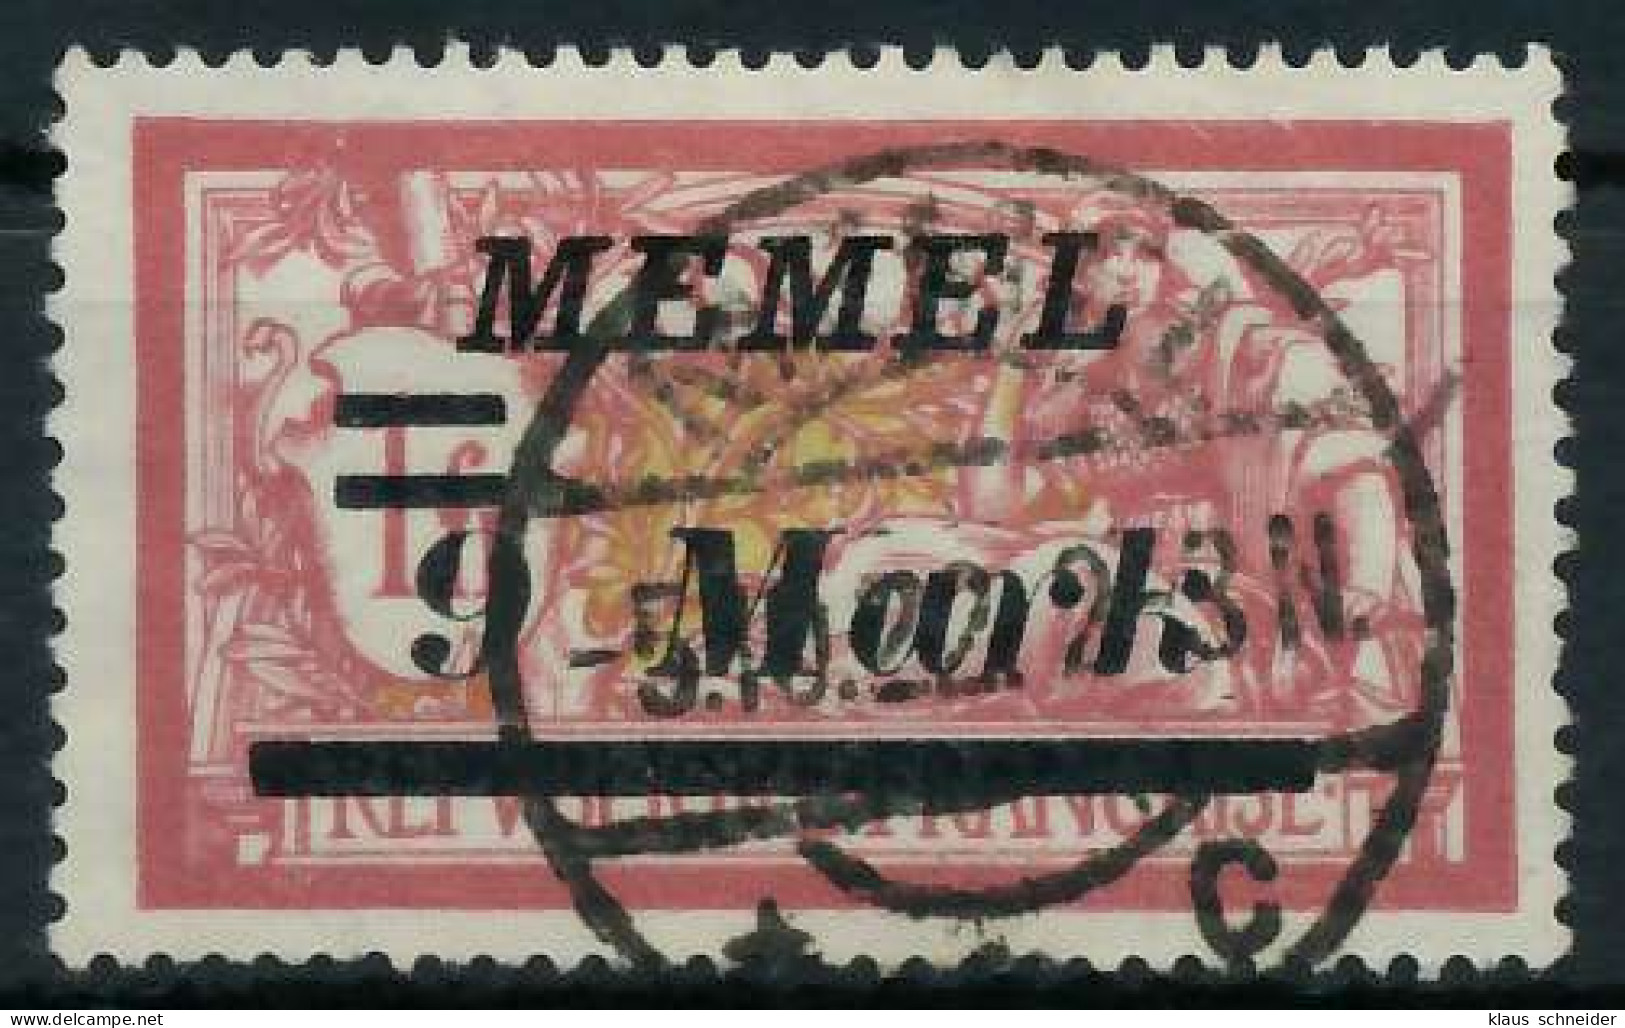 MEMEL 1922 Nr 93II Zentrisch Gestempelt X452E92 - Memelgebiet 1923